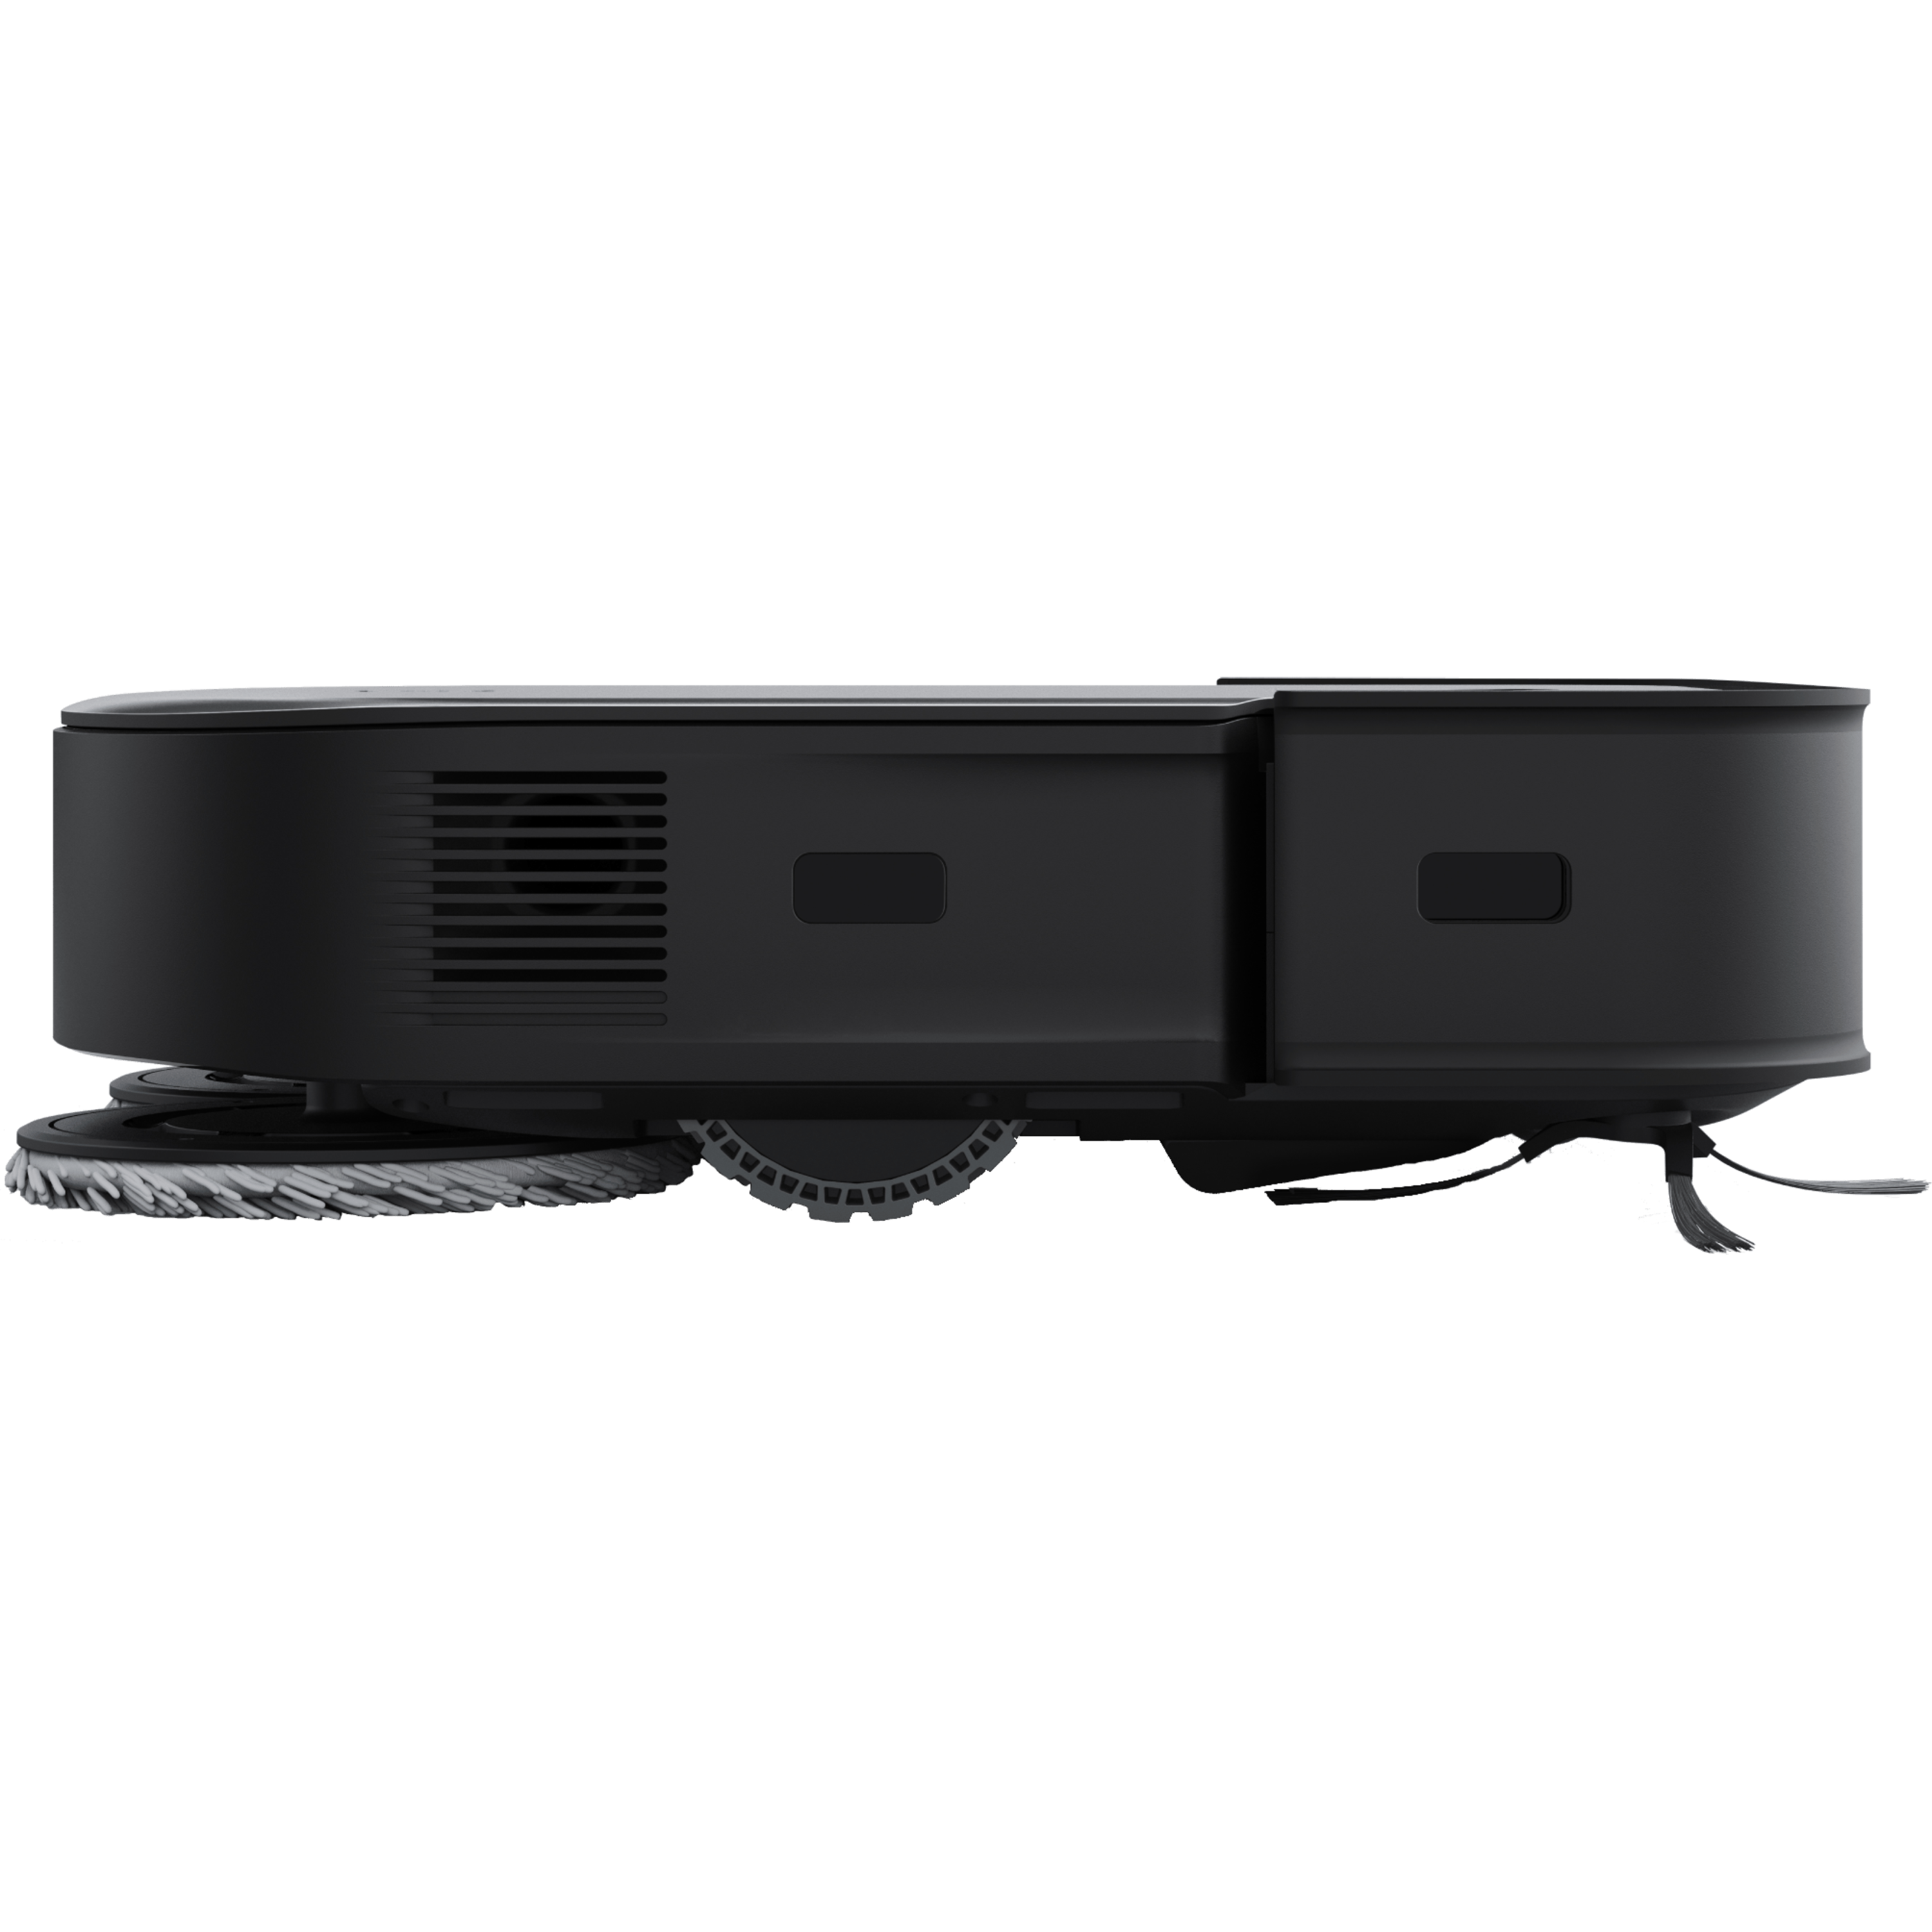 שואב אבק רובטי חכם ומקרצף Ecovacs Deebot x2 Omni עם תחנת עגינה הכוללת ריקון אוטומטי צבע שחור - שנתיים אחריות ע